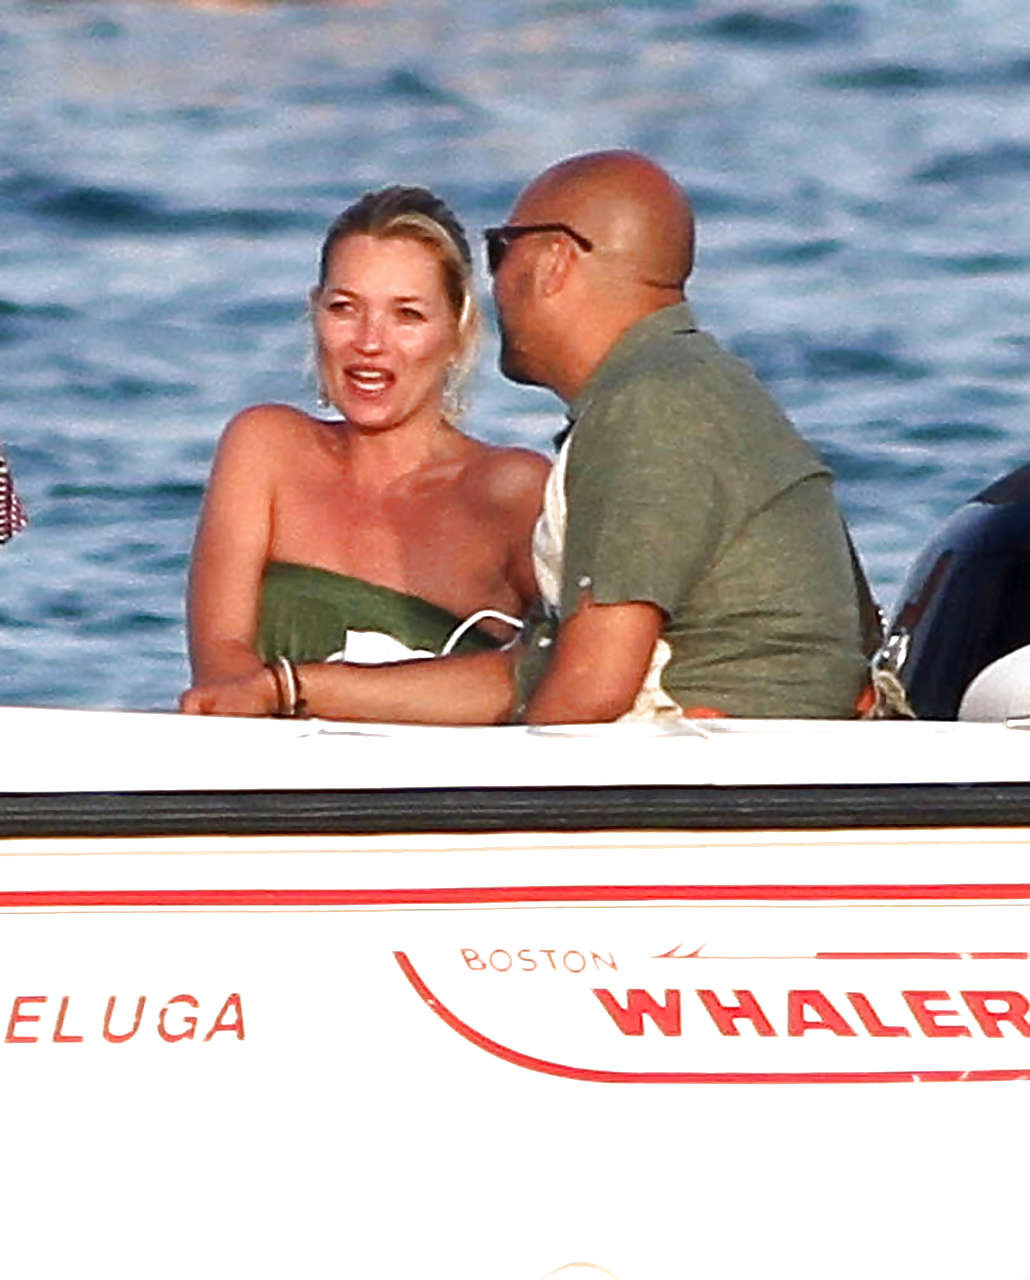 Kate Moss, seins nus, sautant d'un yacht et montrant sa culotte, photographiée par des paparazzis.
 #75290651